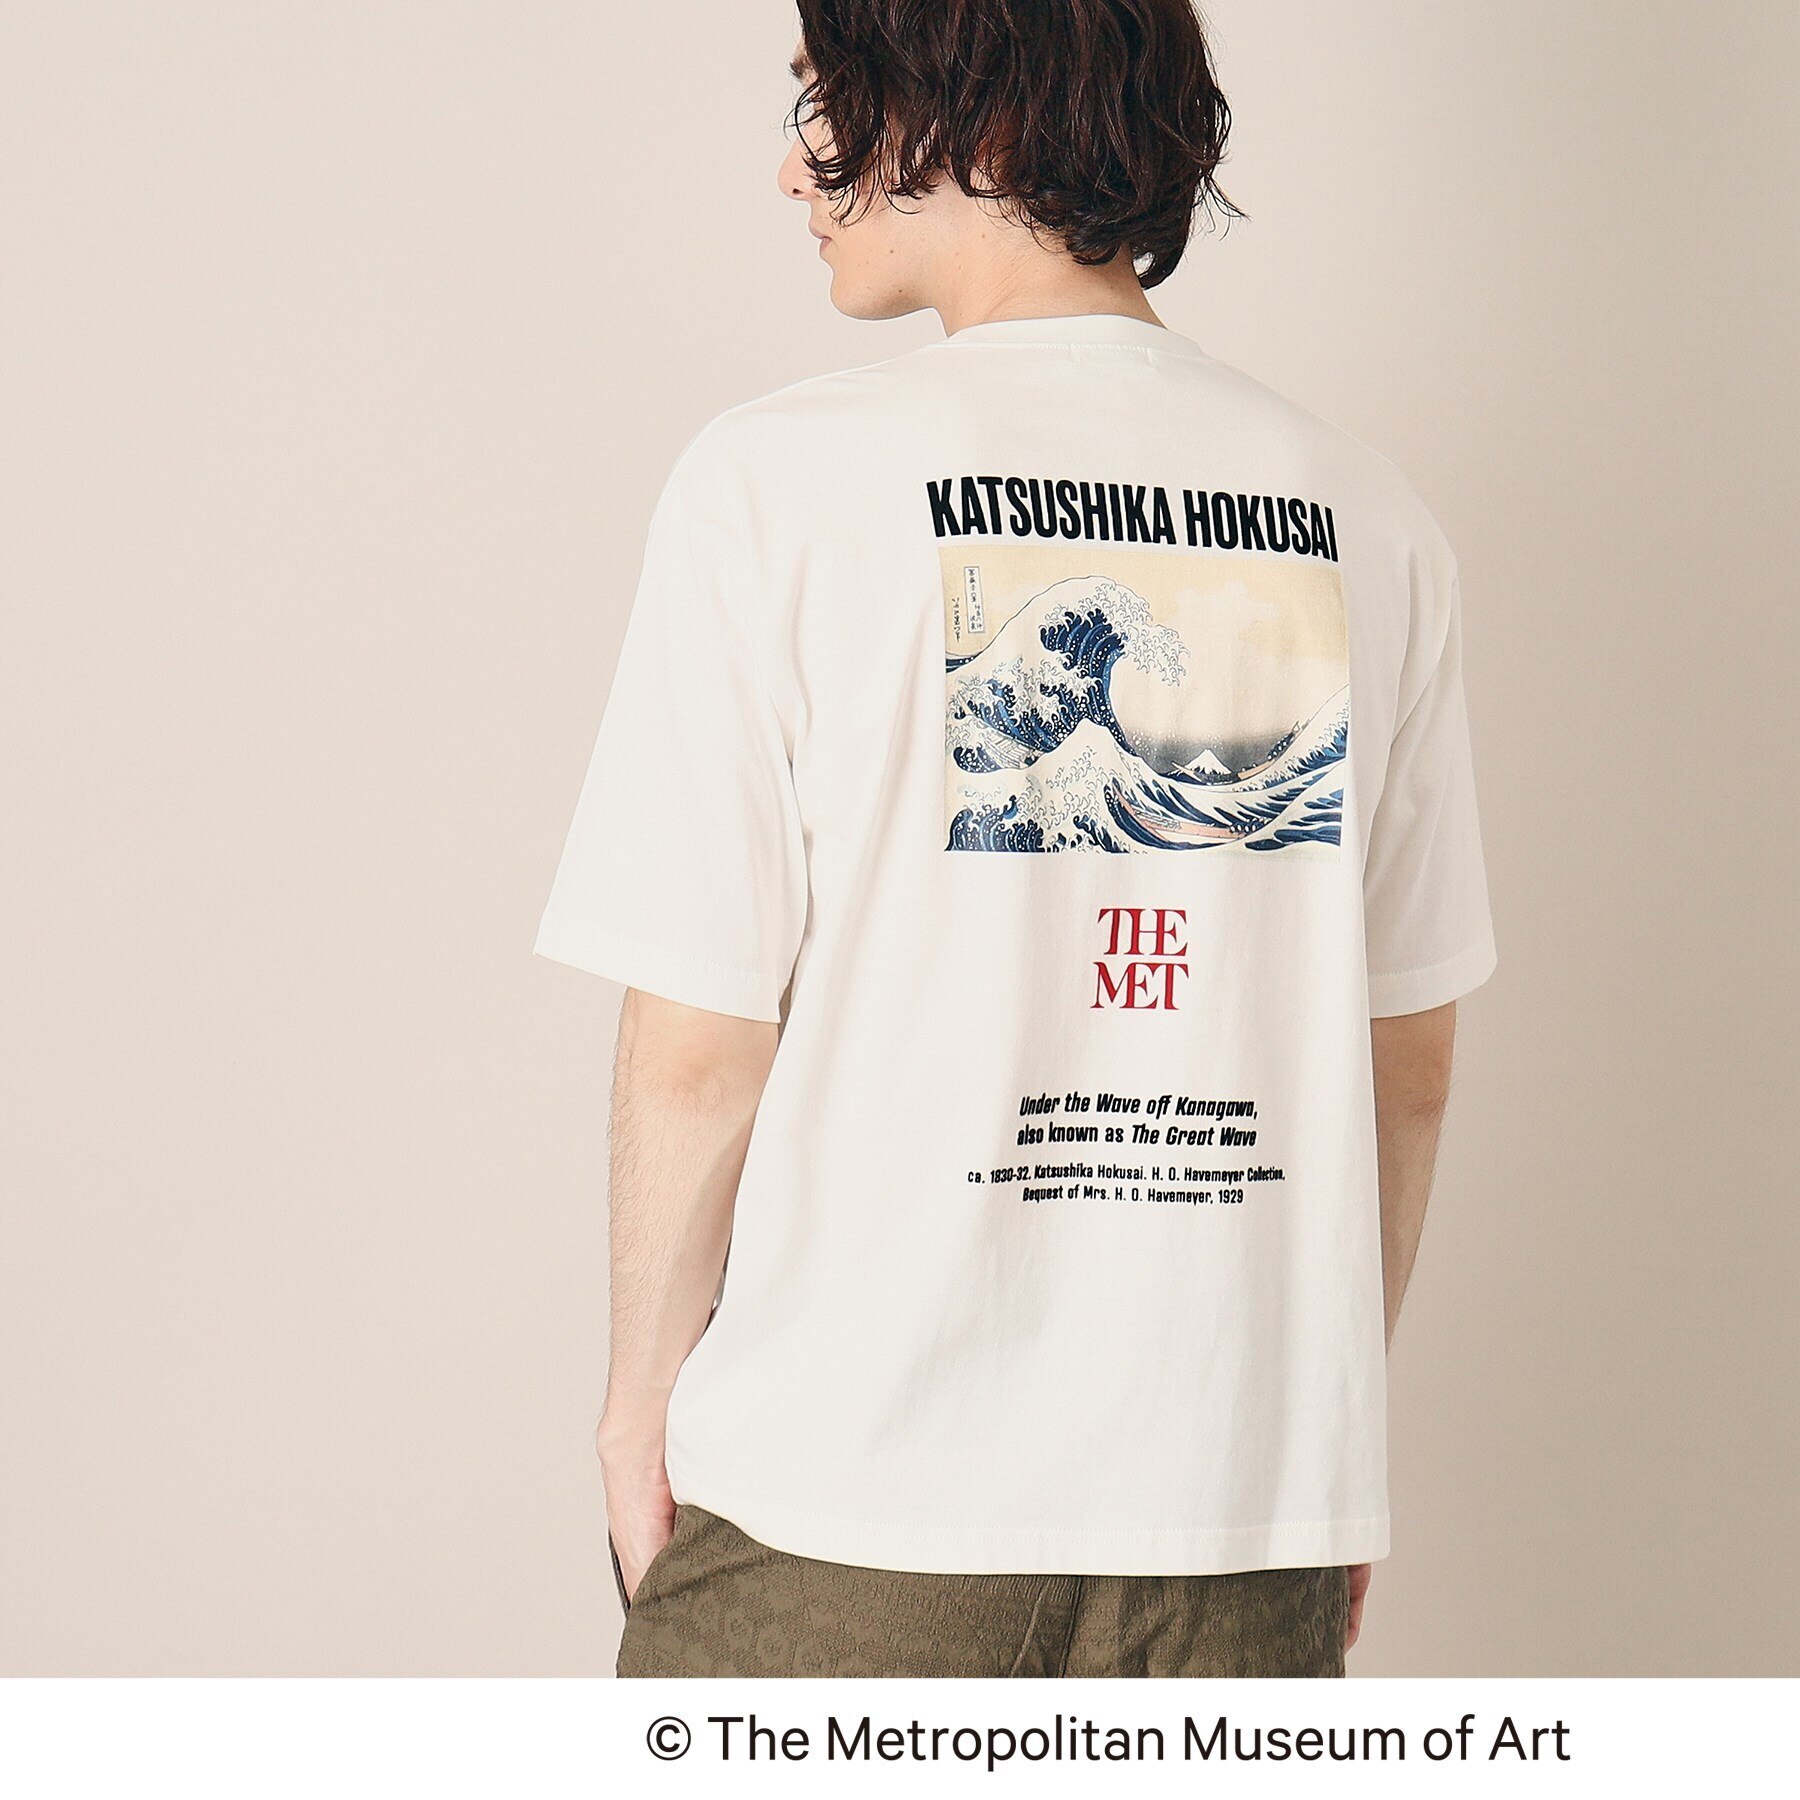 【THE MET】コラボTシャツ